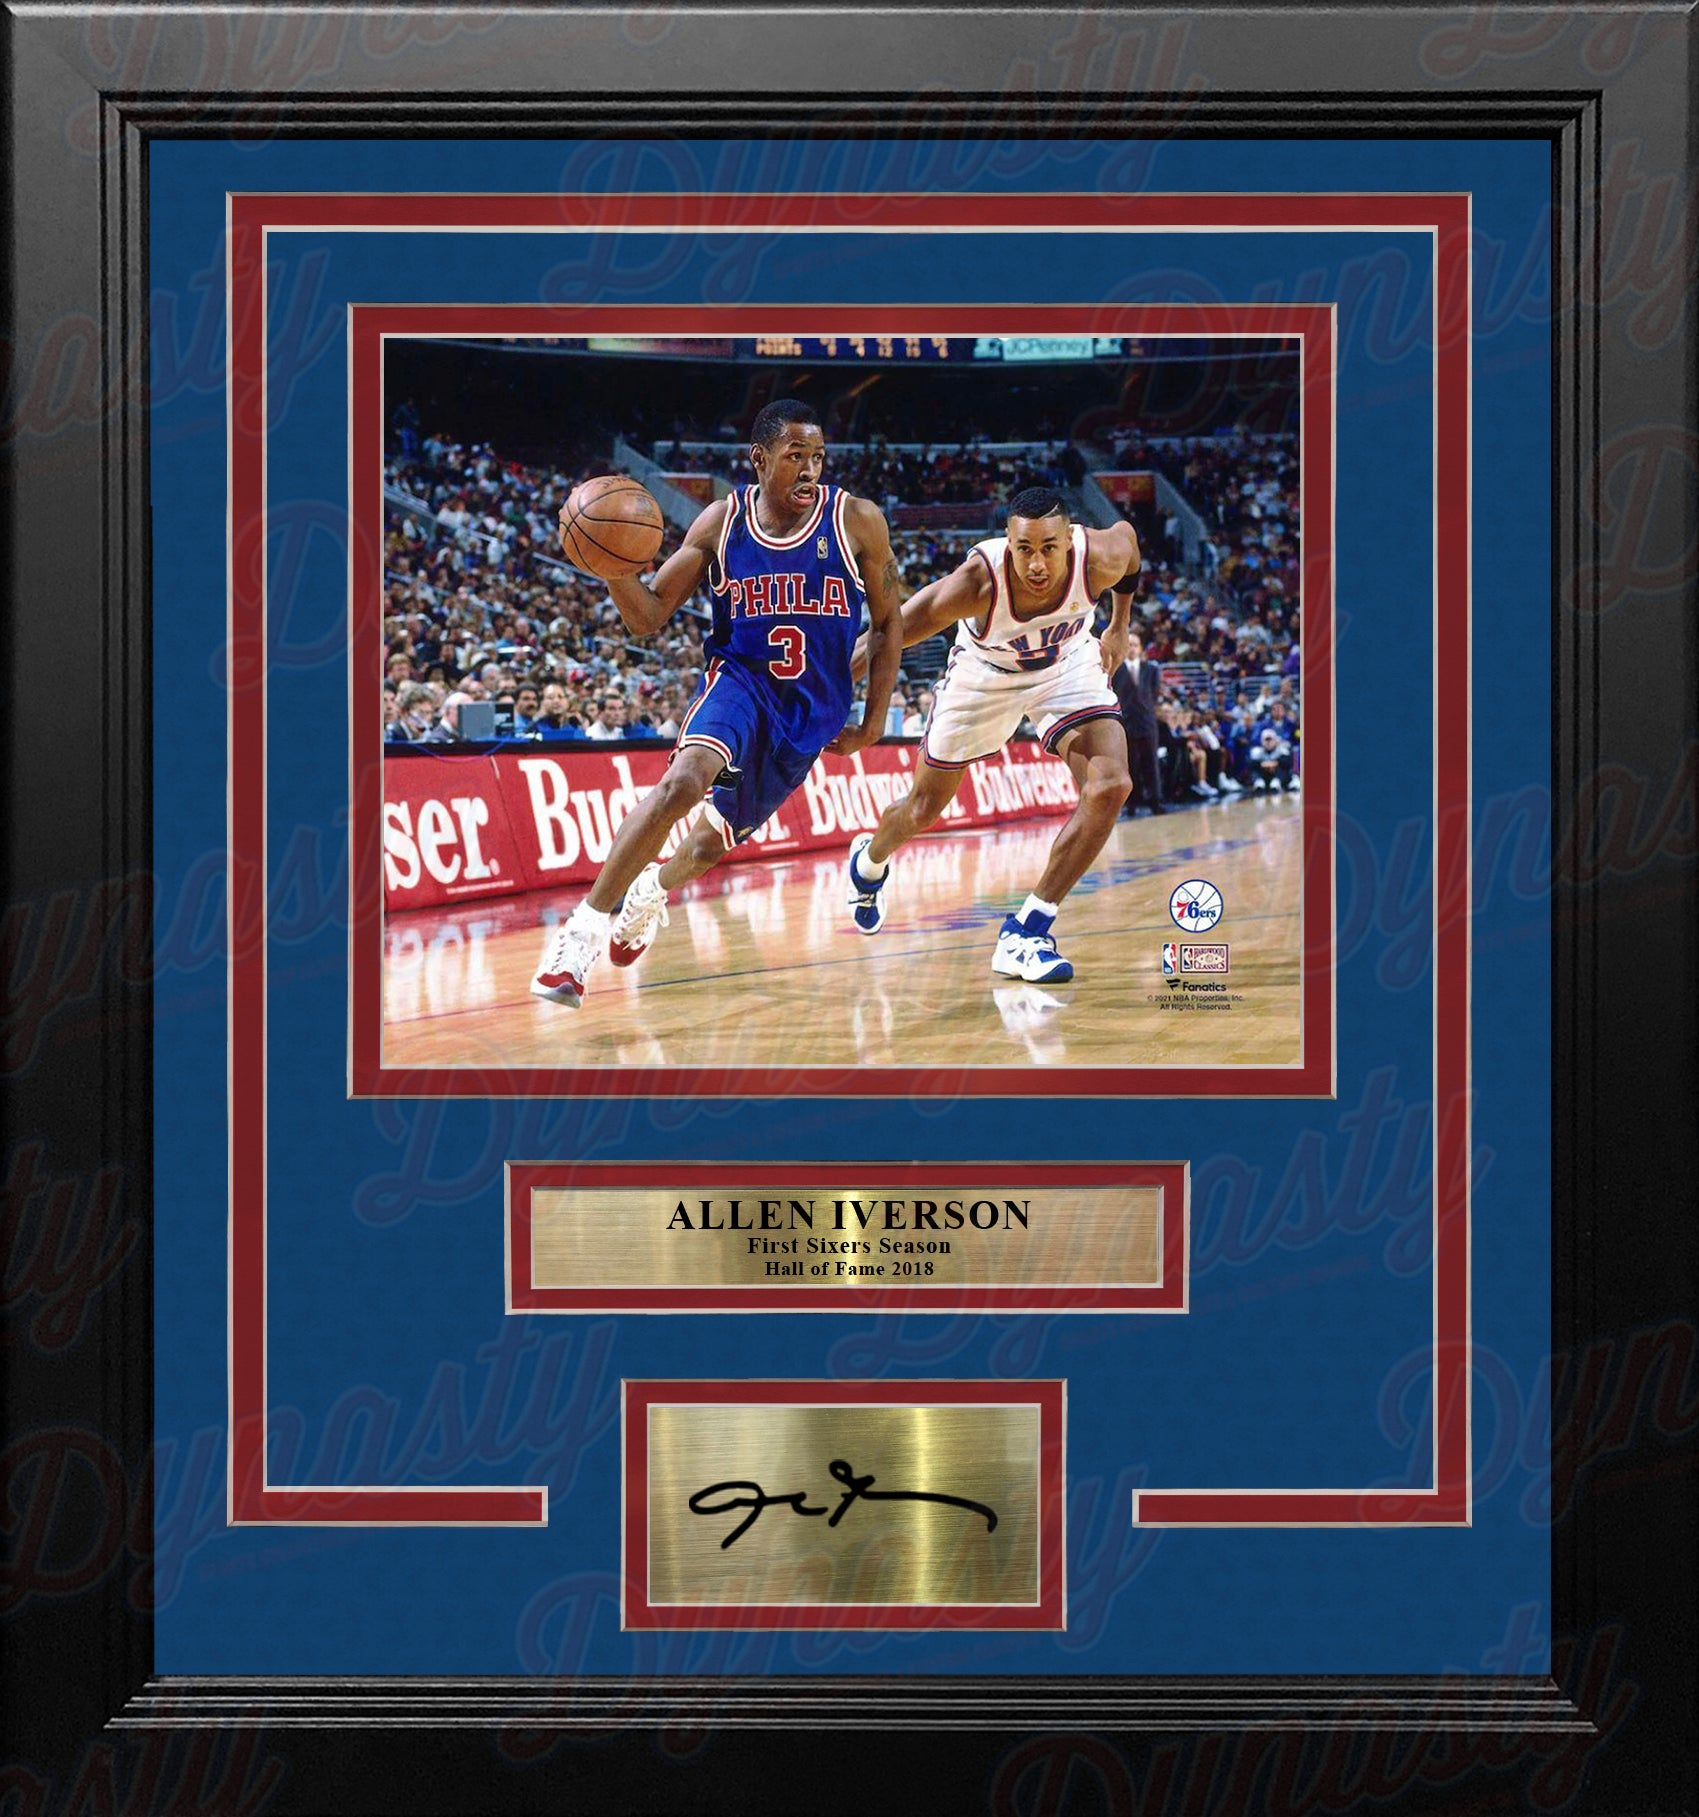 Allen Iverson Signed Framed 8x10 Philadelphia Photo VS Kobe Bryant